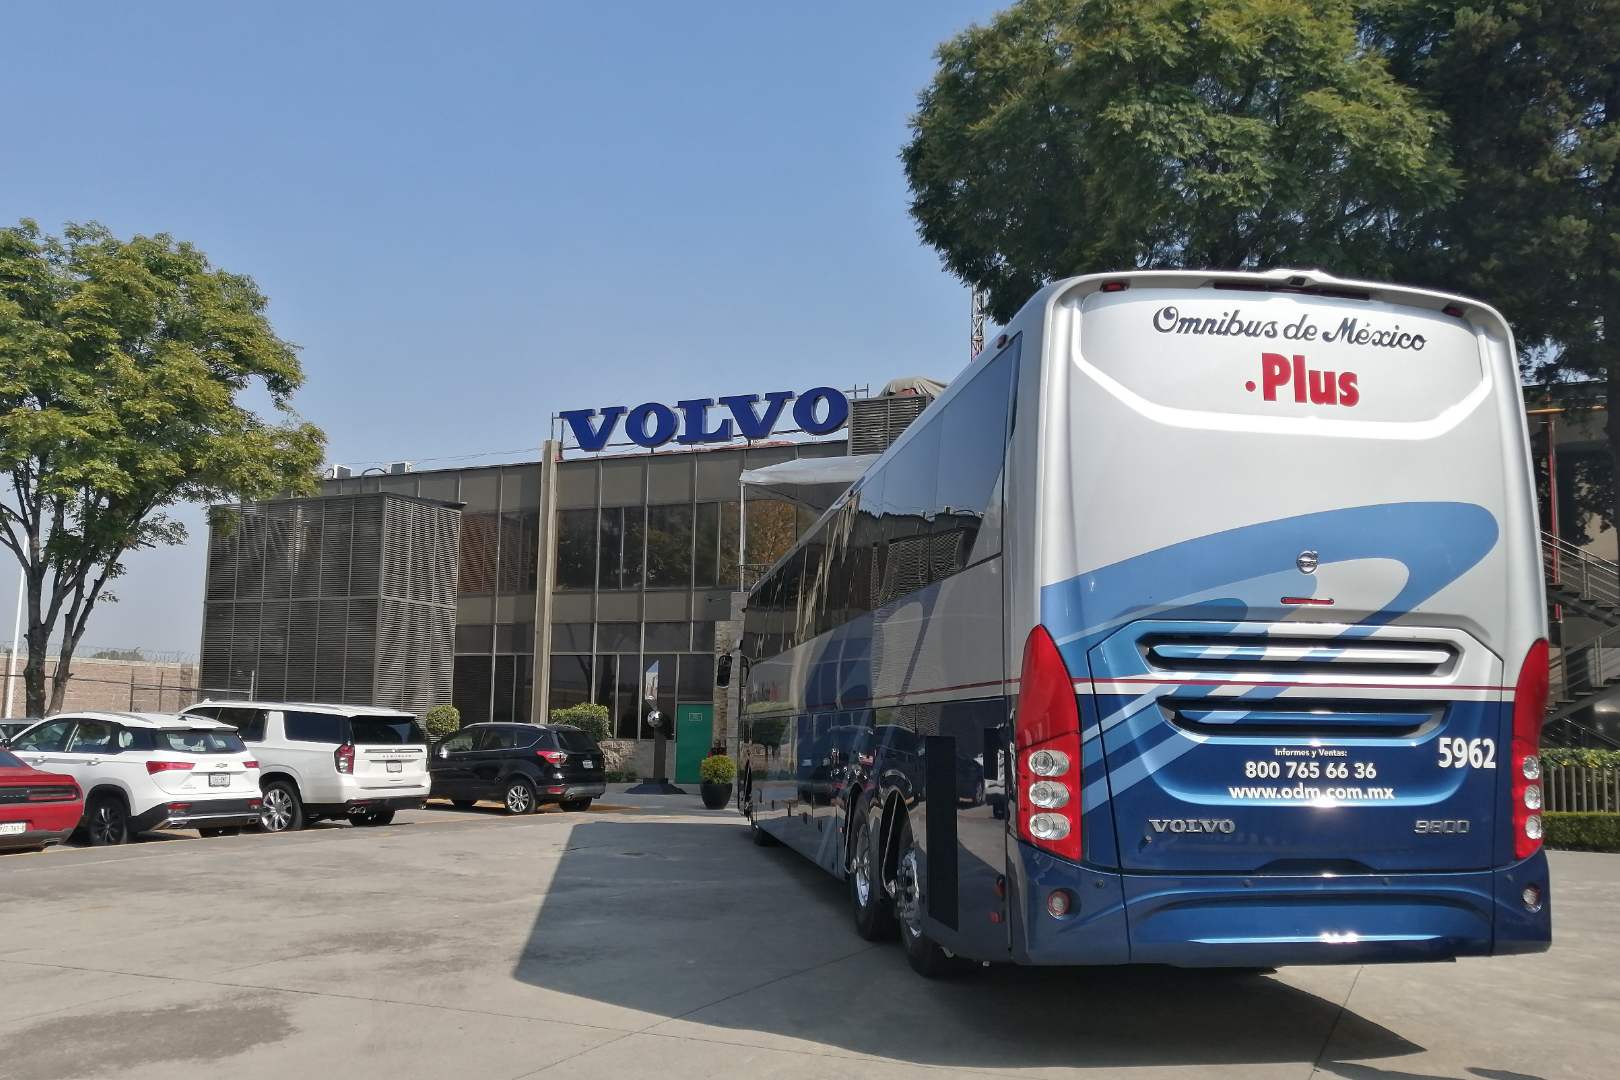 Volvo Buses, 24 años